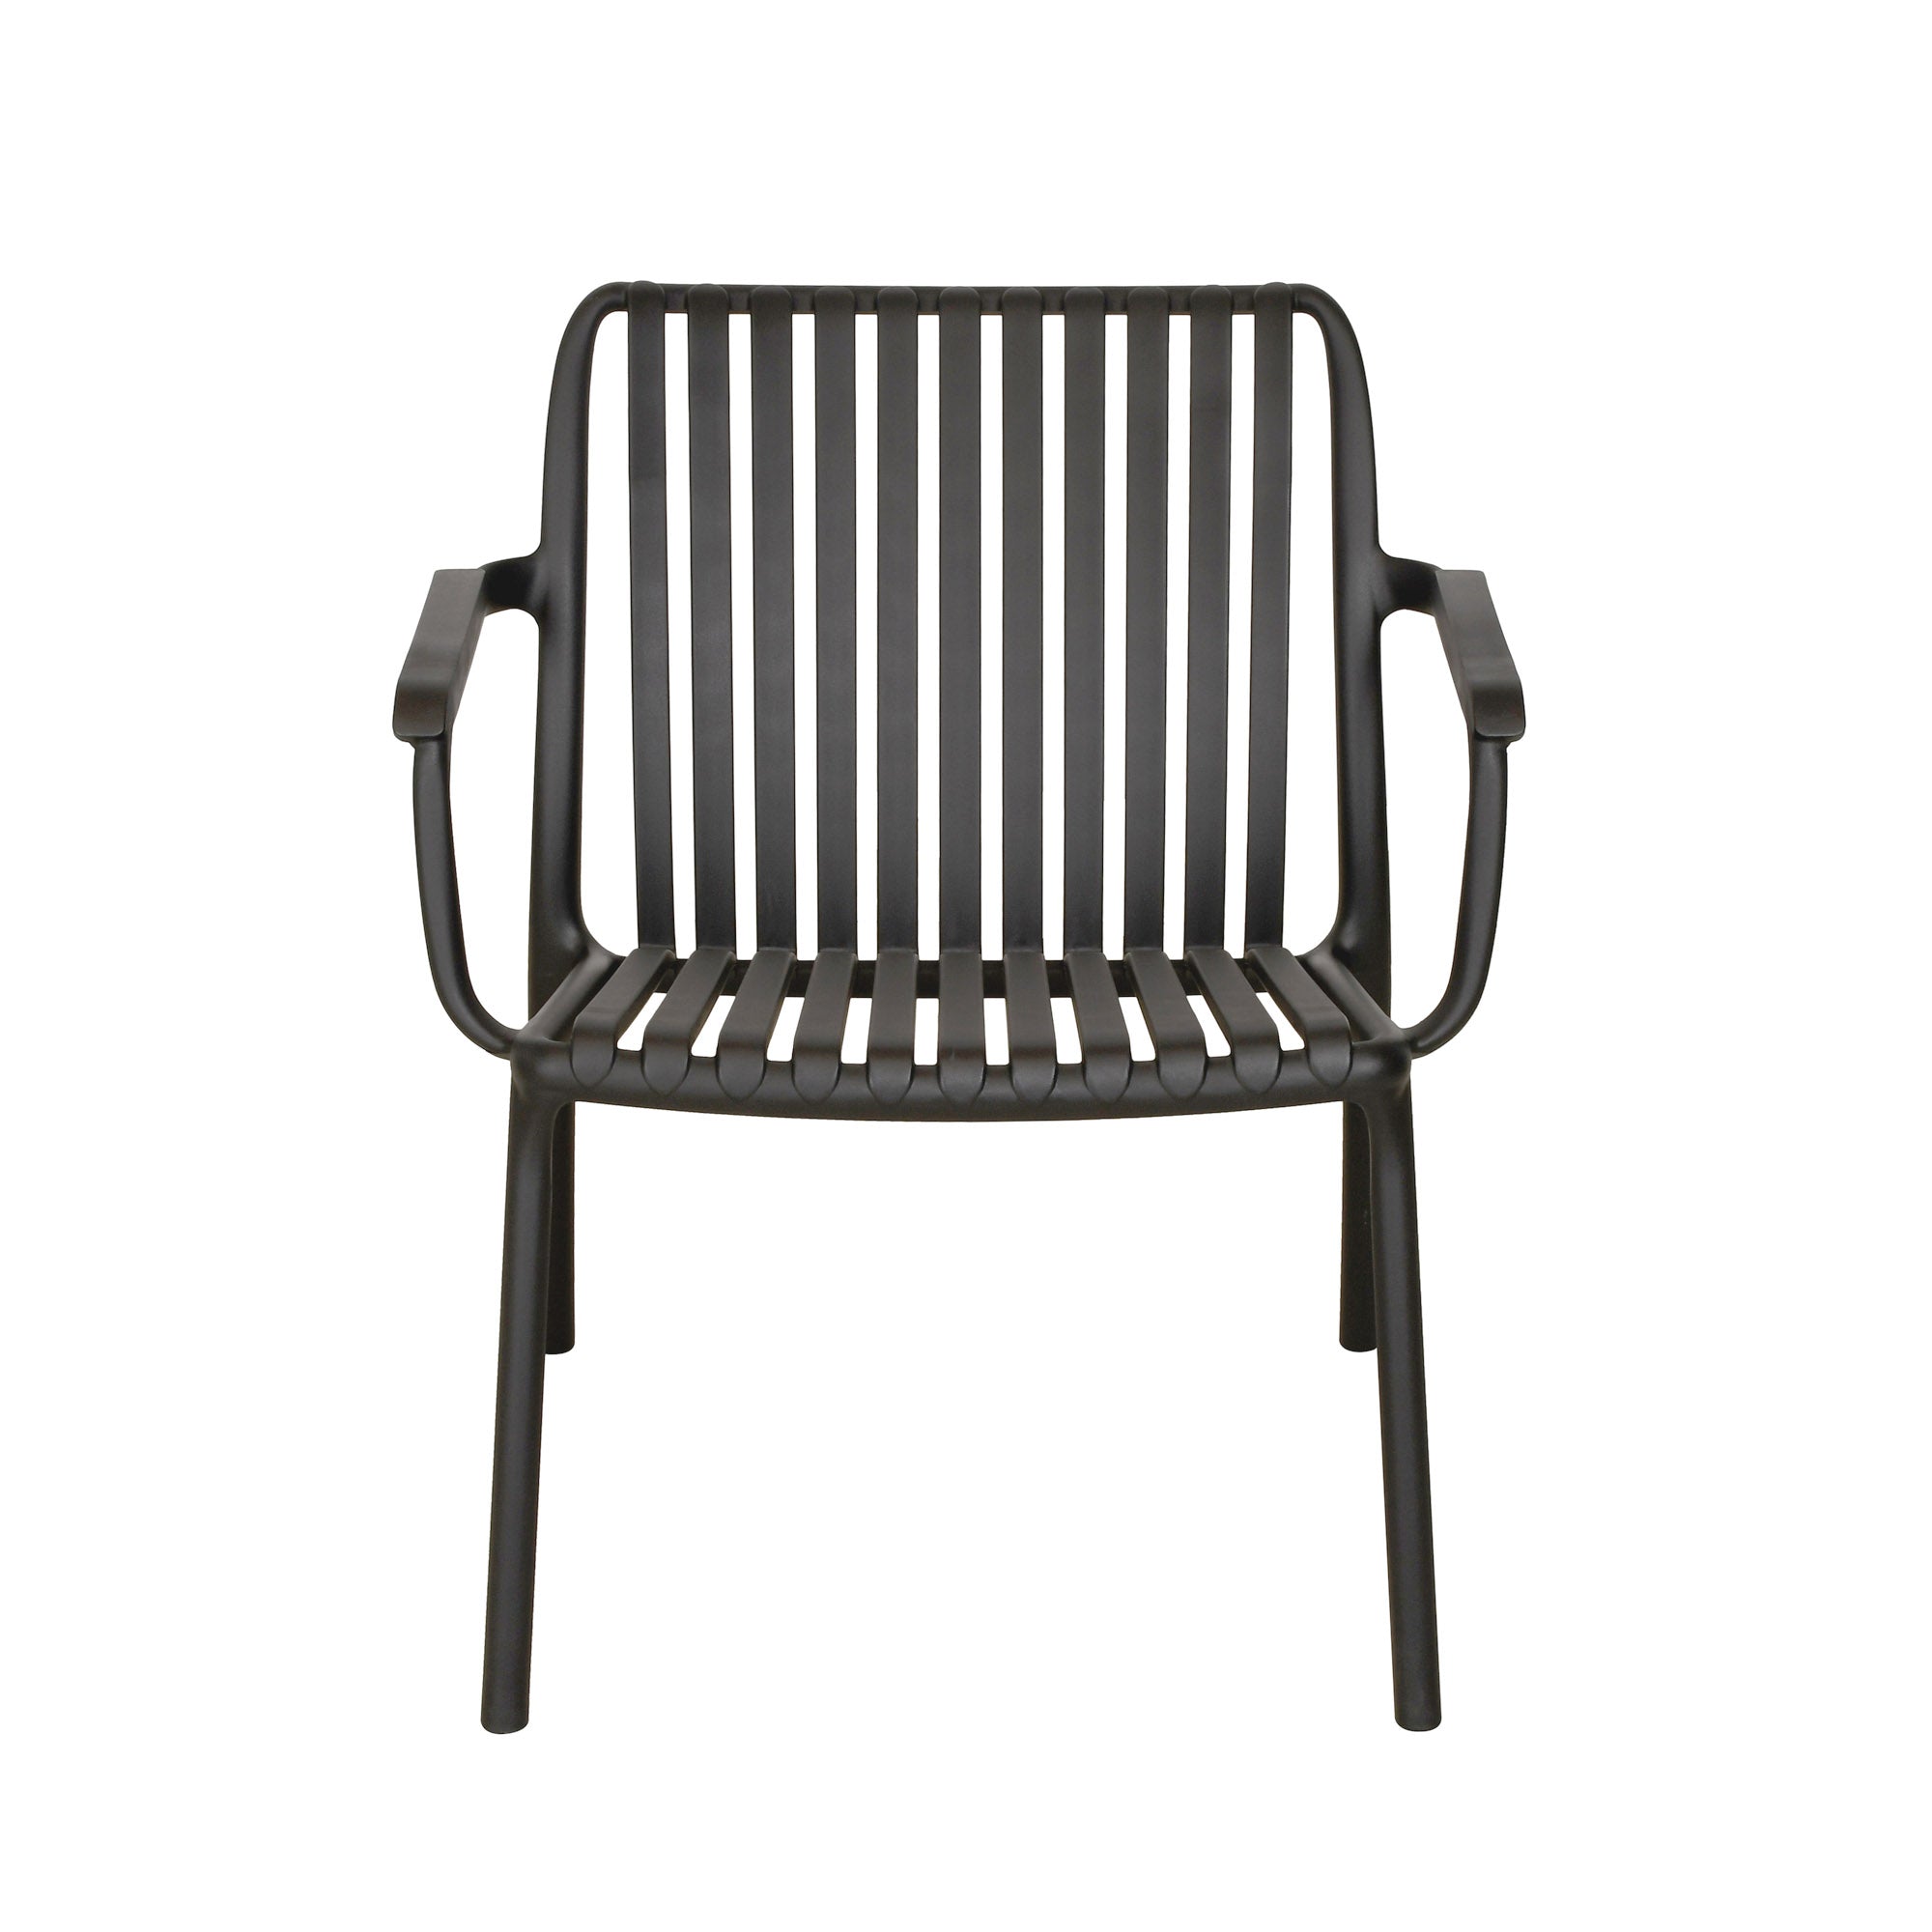 Fiji Stackable Indoor or Outdoor Modern Lounge Chair - Black - Set of 2